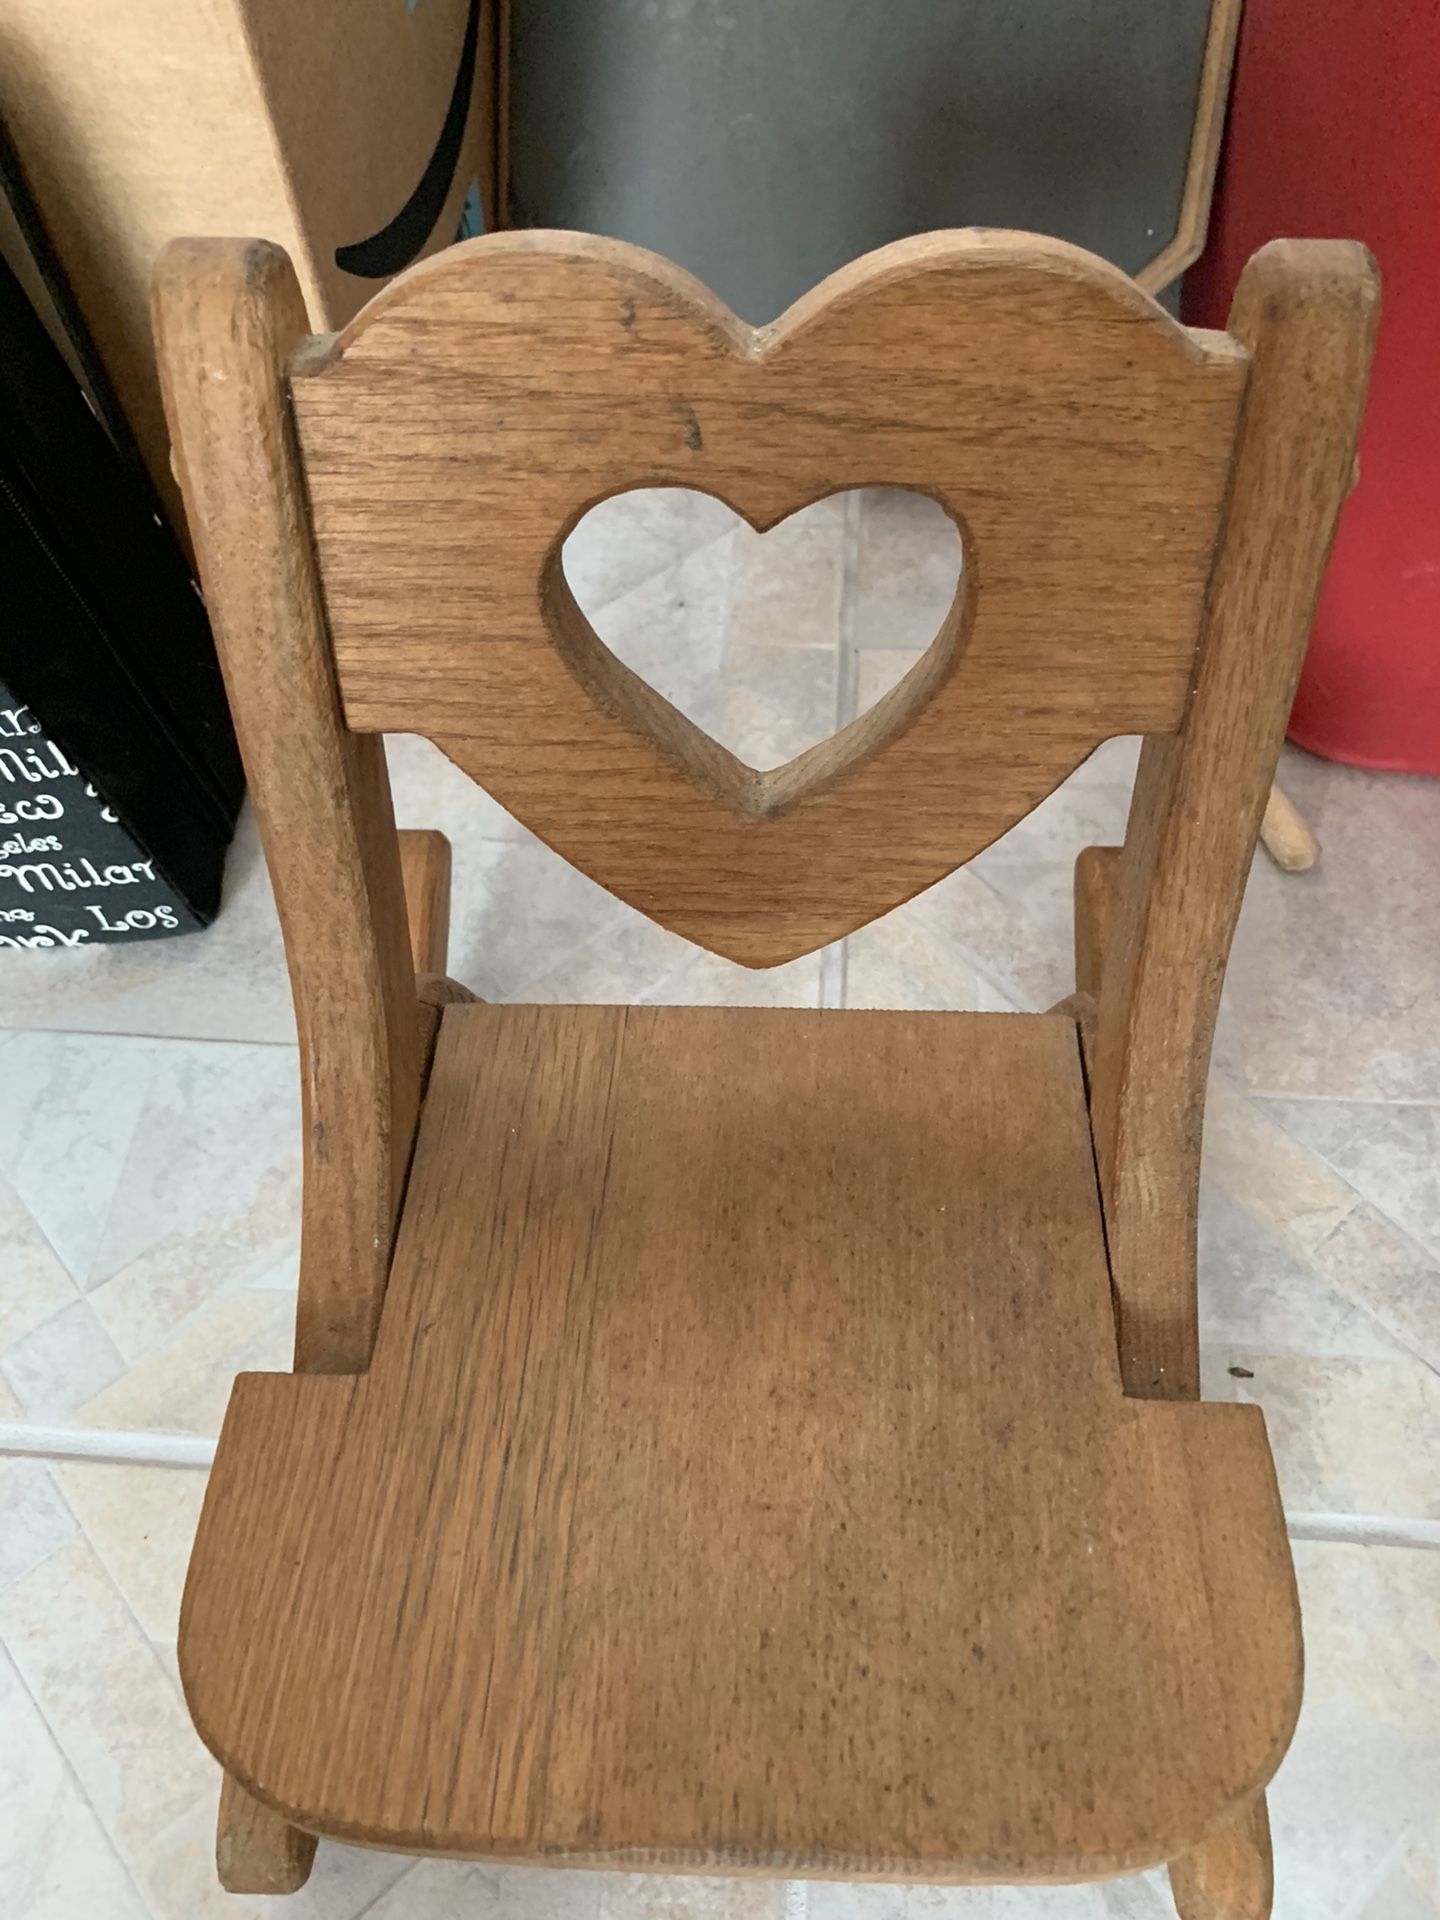 Handmade wooden chair